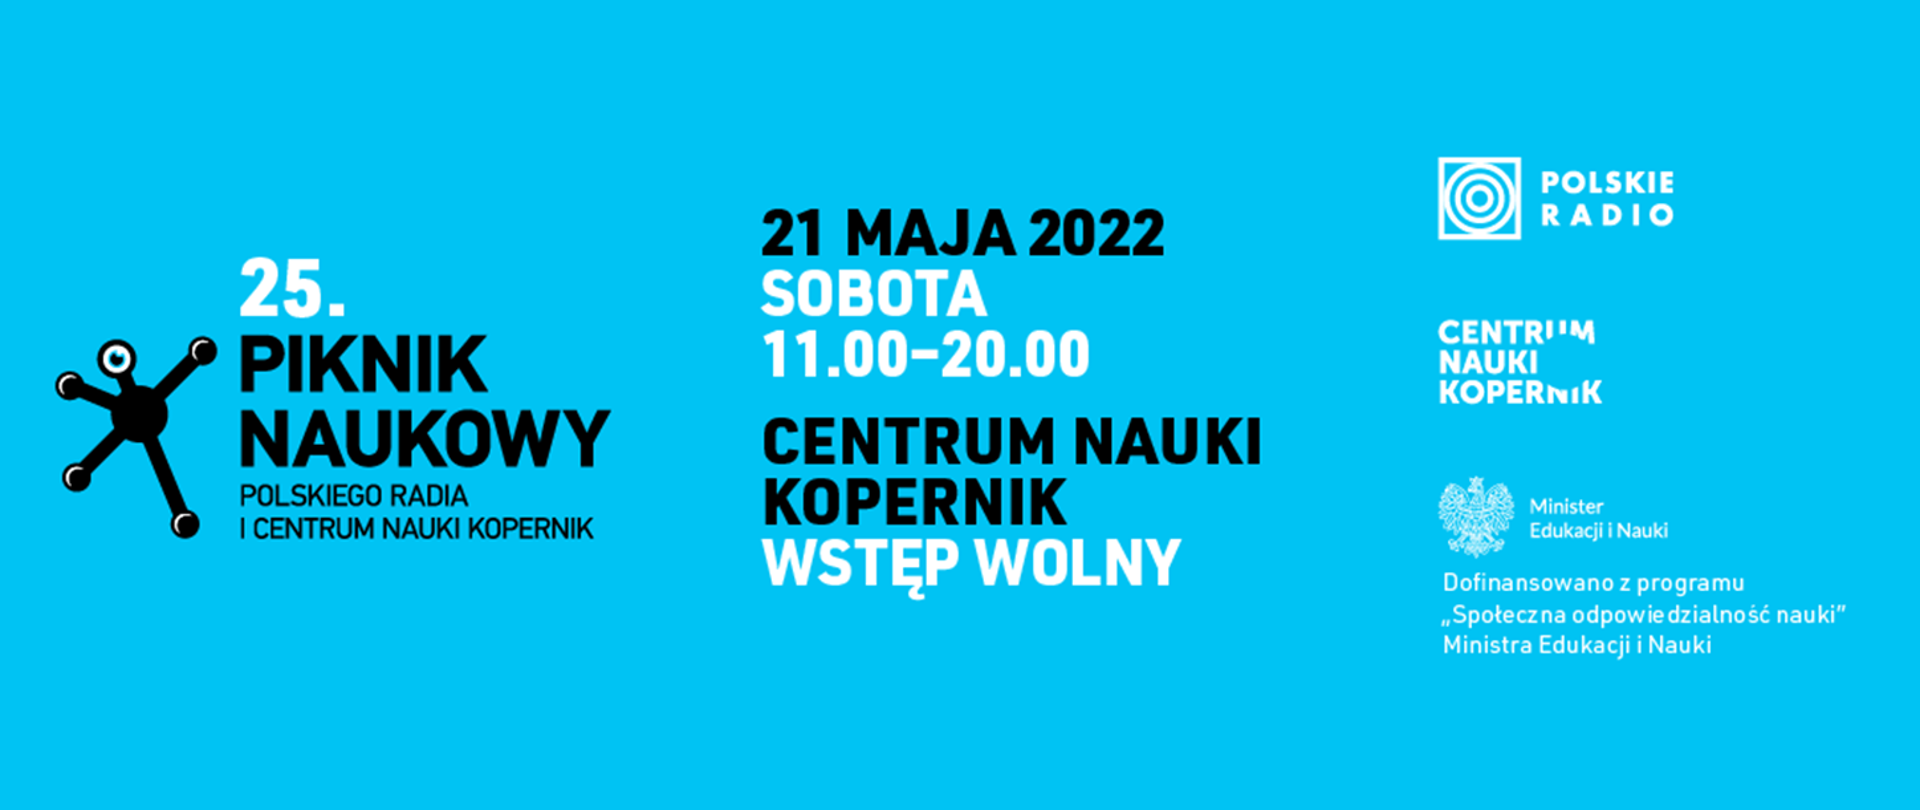 Grafika - na niebieskim tle napis 25. Piknik Naukowy Polskiego Radia i Centrum Nauki Kopernik.